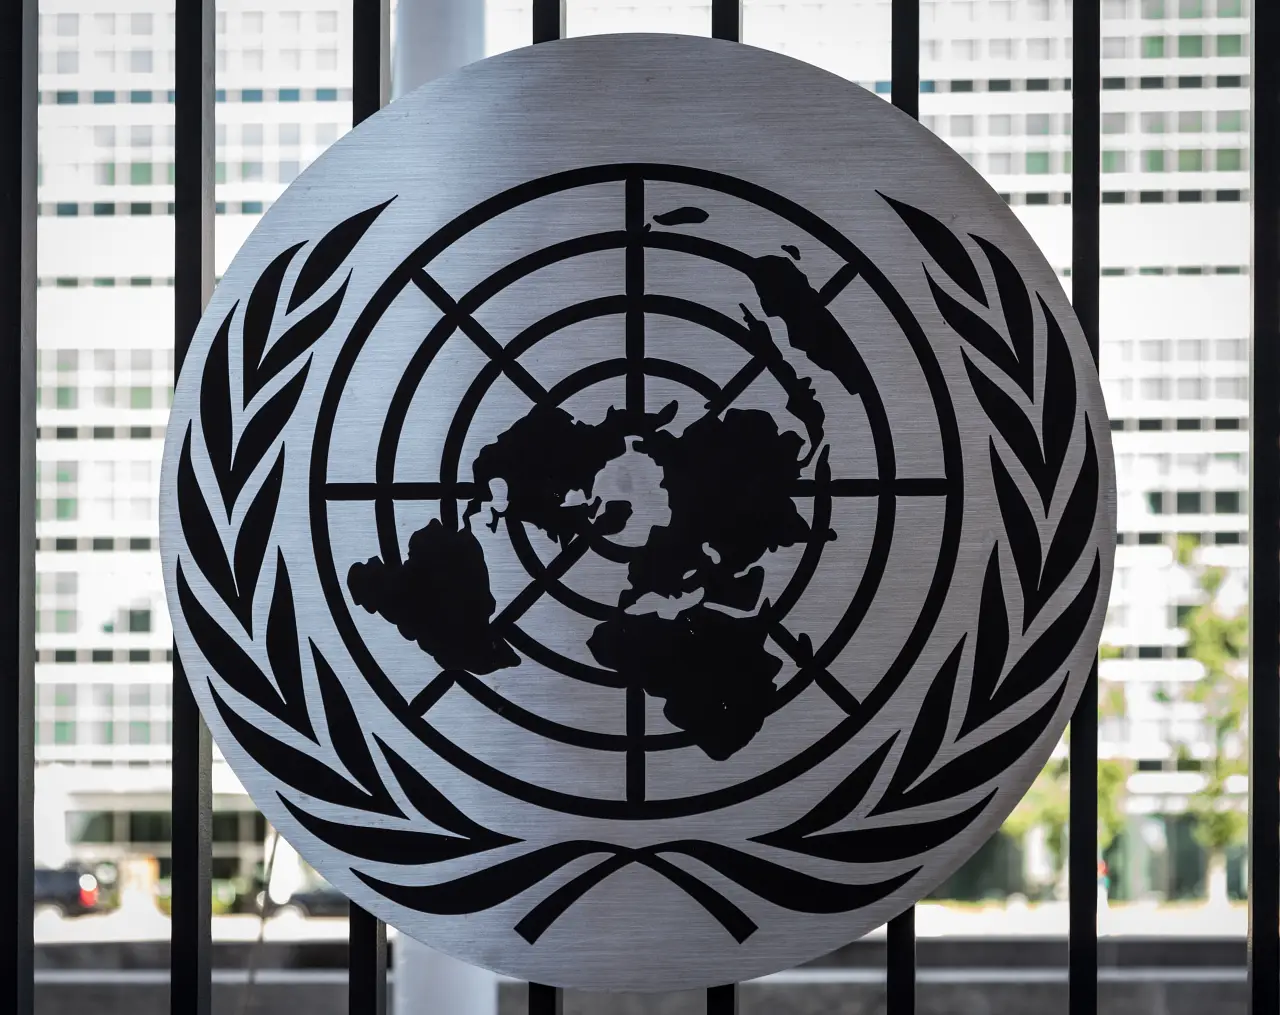 ONU propone nuevas instituciones mundiales basadas en la equidad y solidaridad